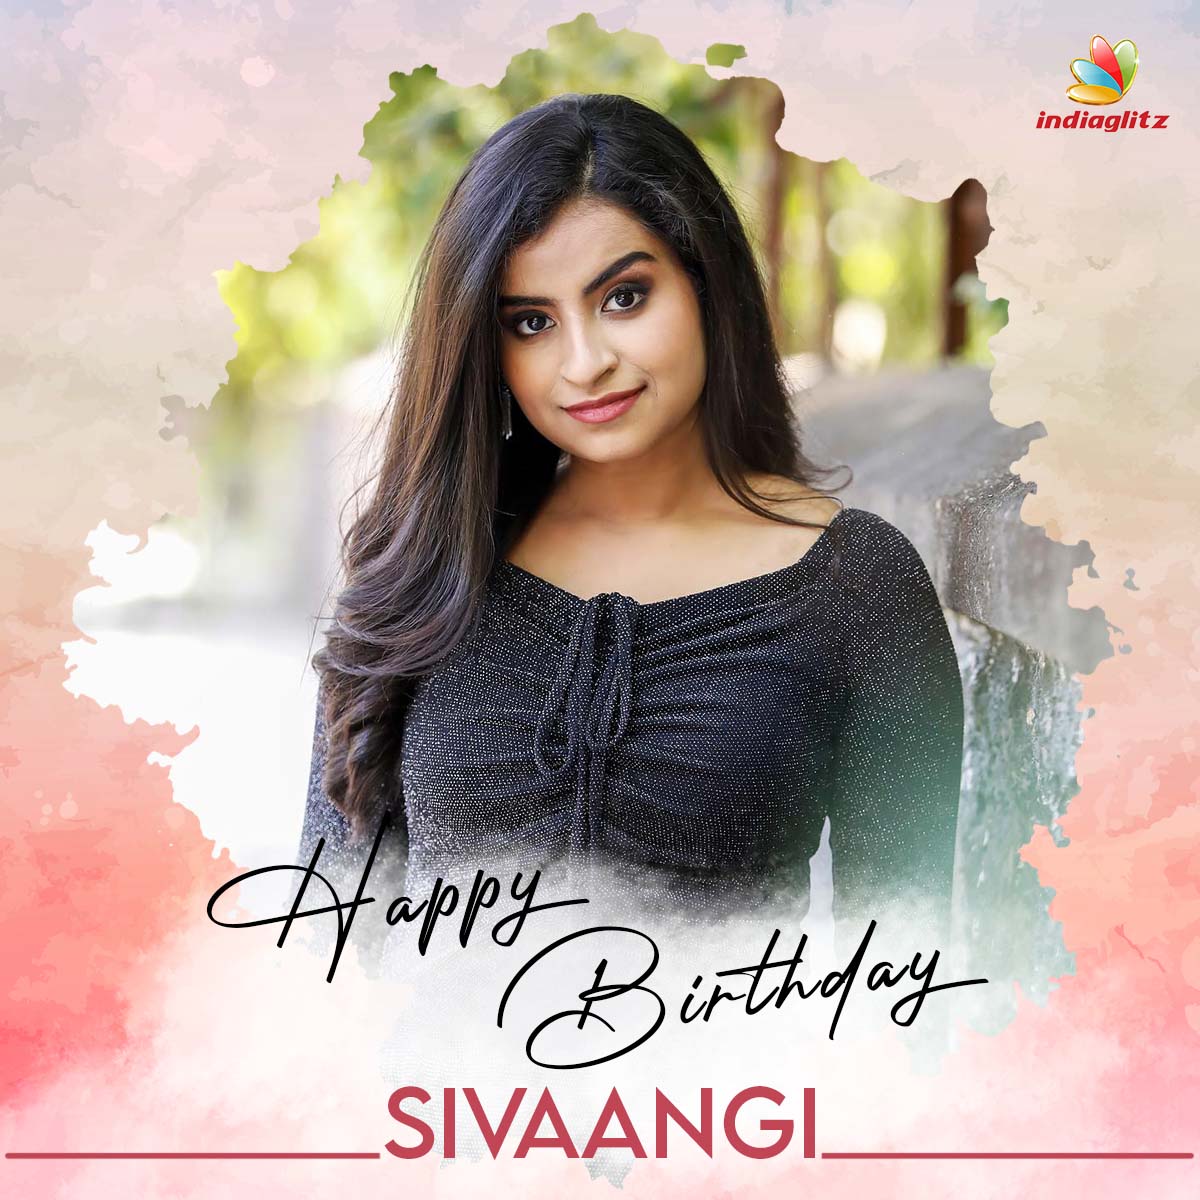 Wishing Actress @sivaangi_k a Very Happy Birthday 🥳

#HappyBirthdaySivaangi #HBDSivaangi